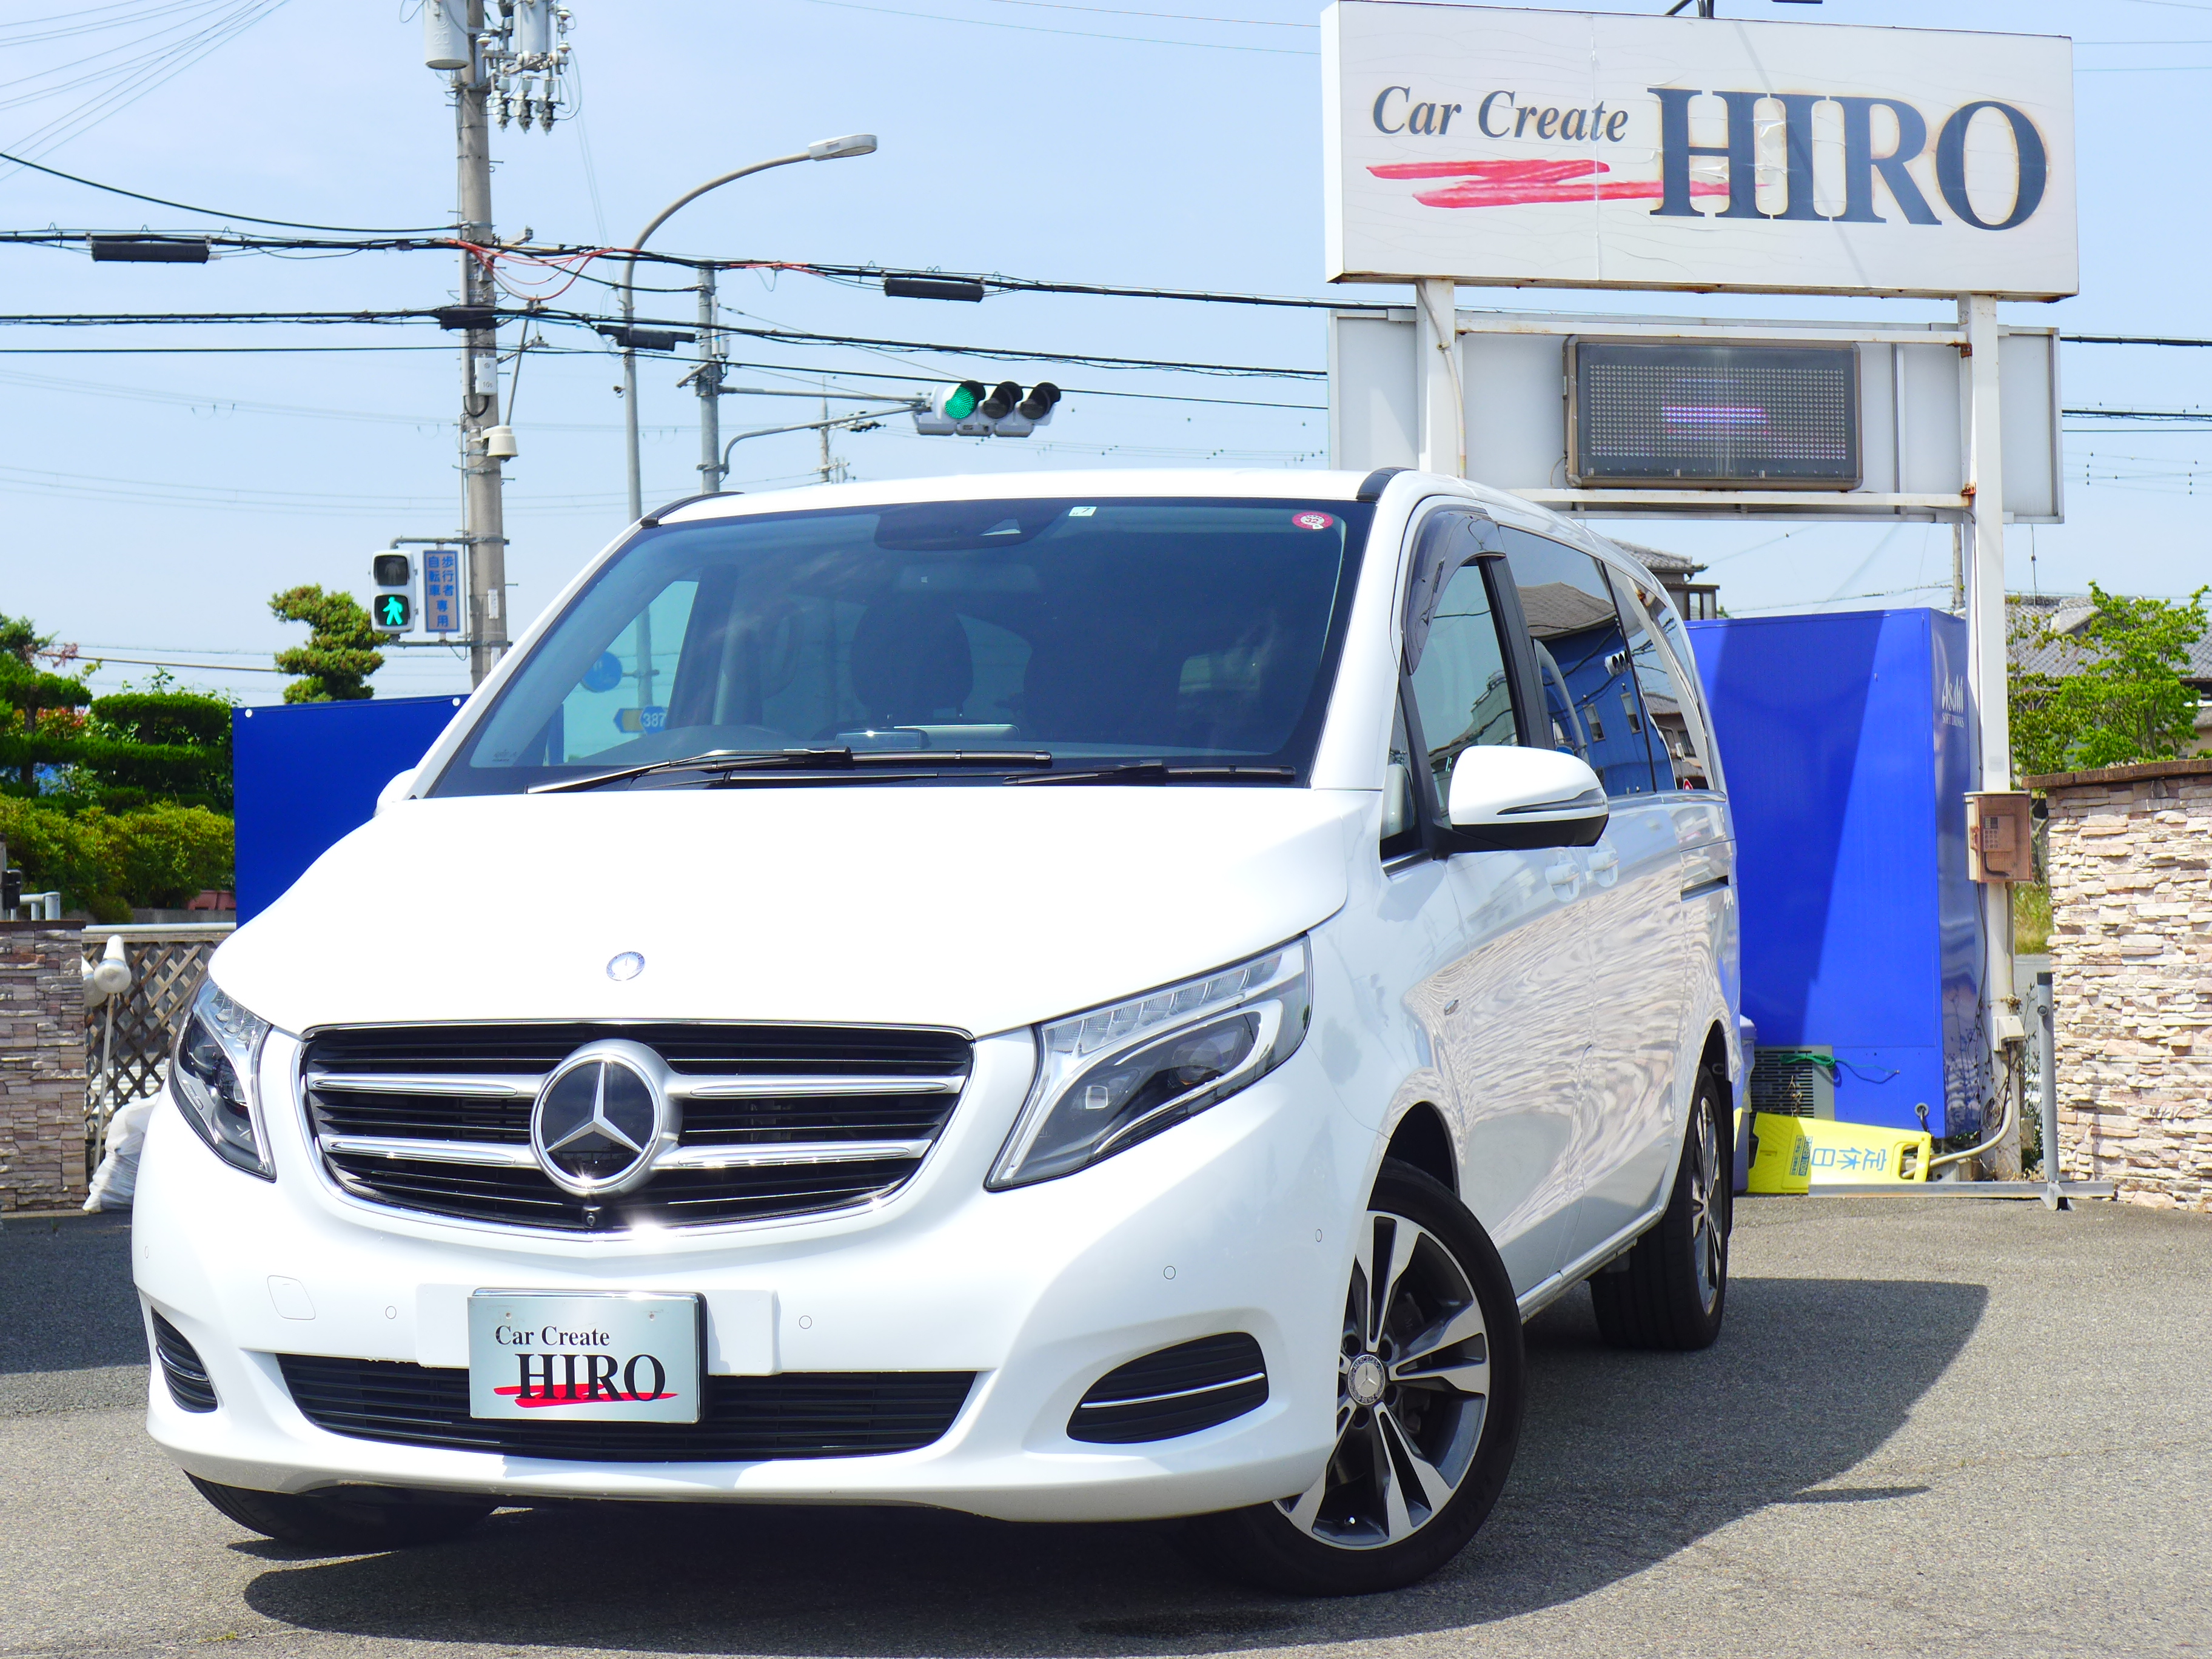 メルセデス ベンツvクラス2ｄアバンギャルドロング 兵庫県加古川市の新車中古車販売買取 車検整備 Car Create Hiro